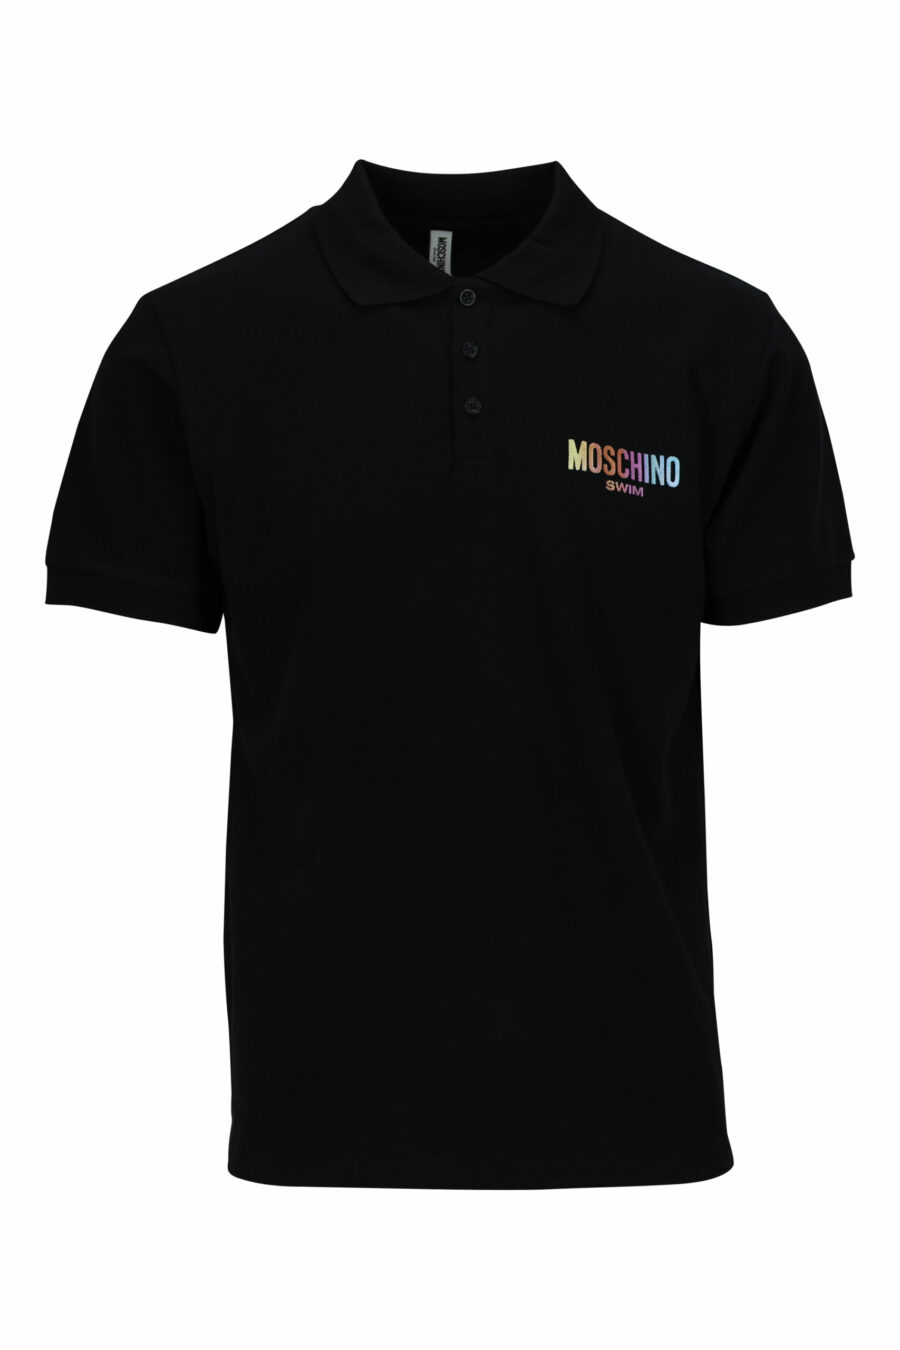 Schwarzes Poloshirt mit mehrfarbigem Mini-Logo - 667113674803 skaliert